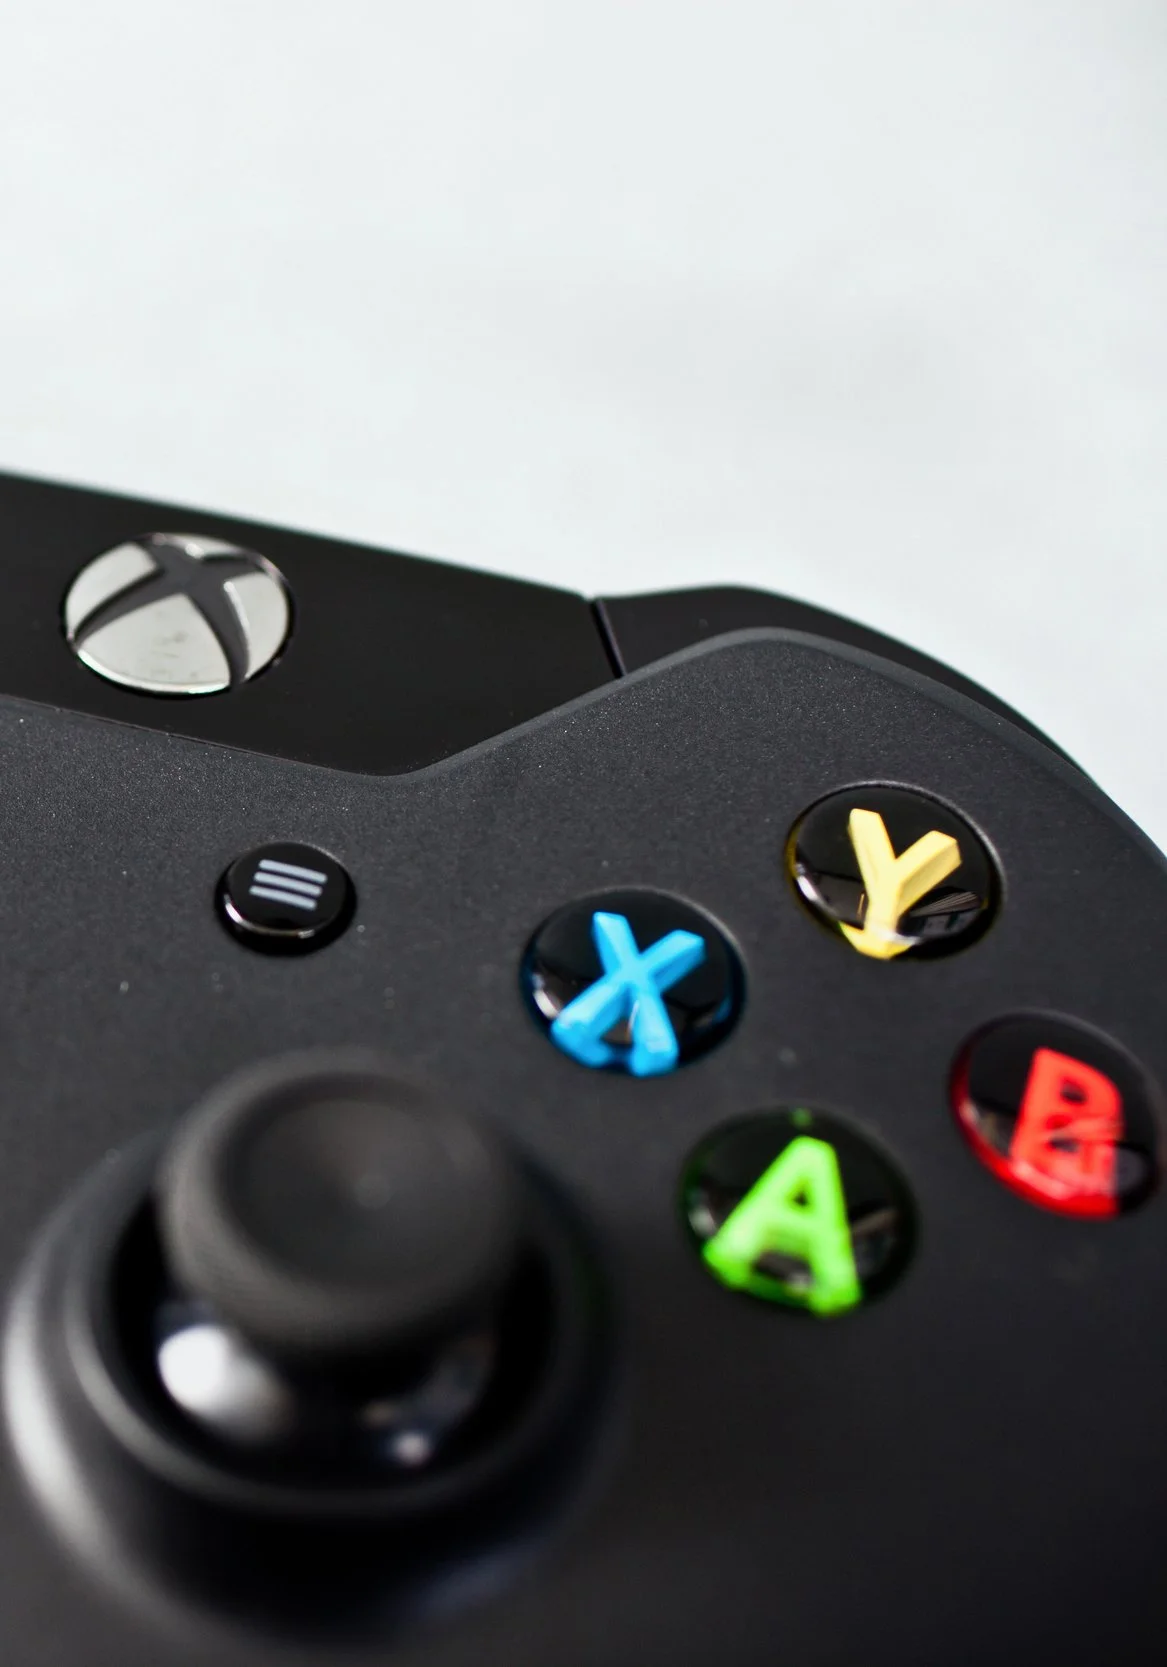 Microsoft решила заново познакомить пользователей с Xbox One. Такое решение было принято в связи со сменой политики компании.